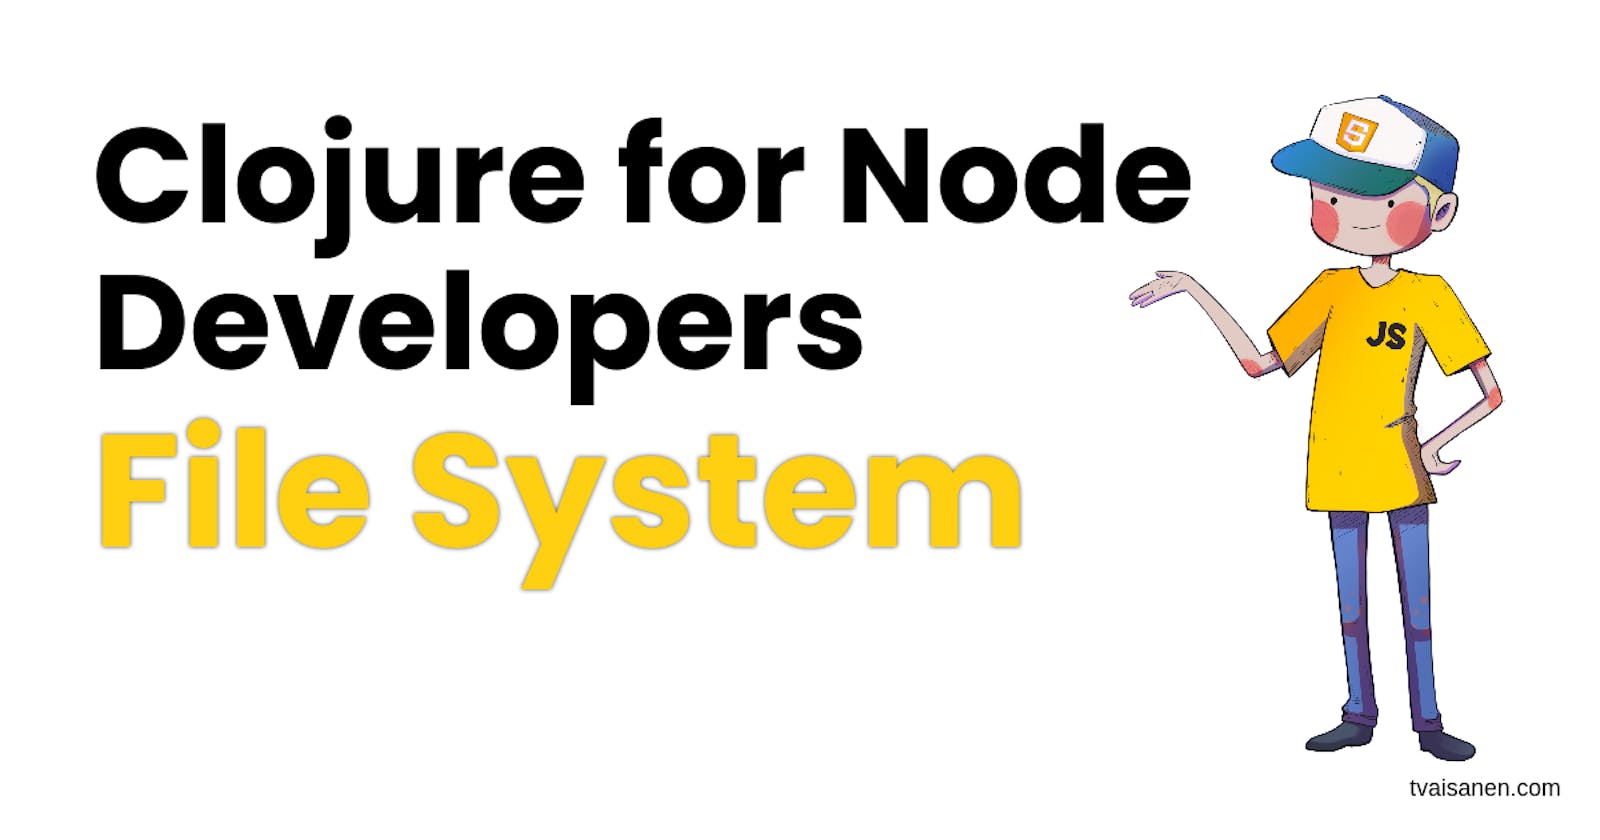 Clojure File System Essentials for Node.js Developers